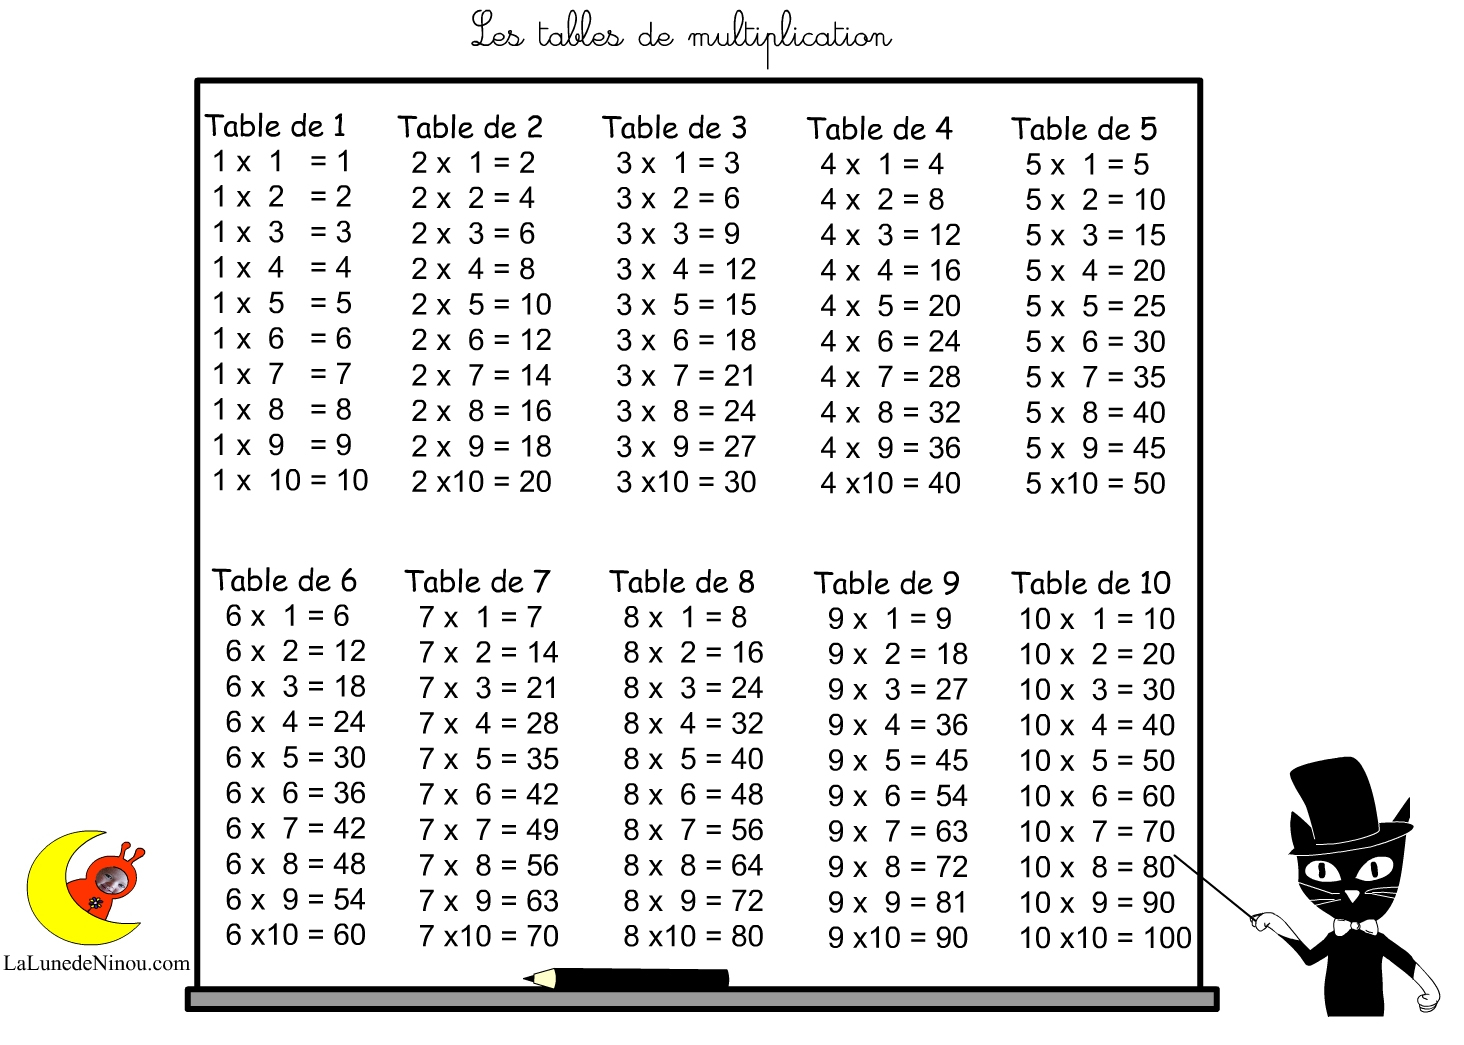 Jeux De Tables De Multiplication Ce1 Ce2 Cm1 - Multiplicator destiné Jeux De Ce1 Gratuit En Ligne 